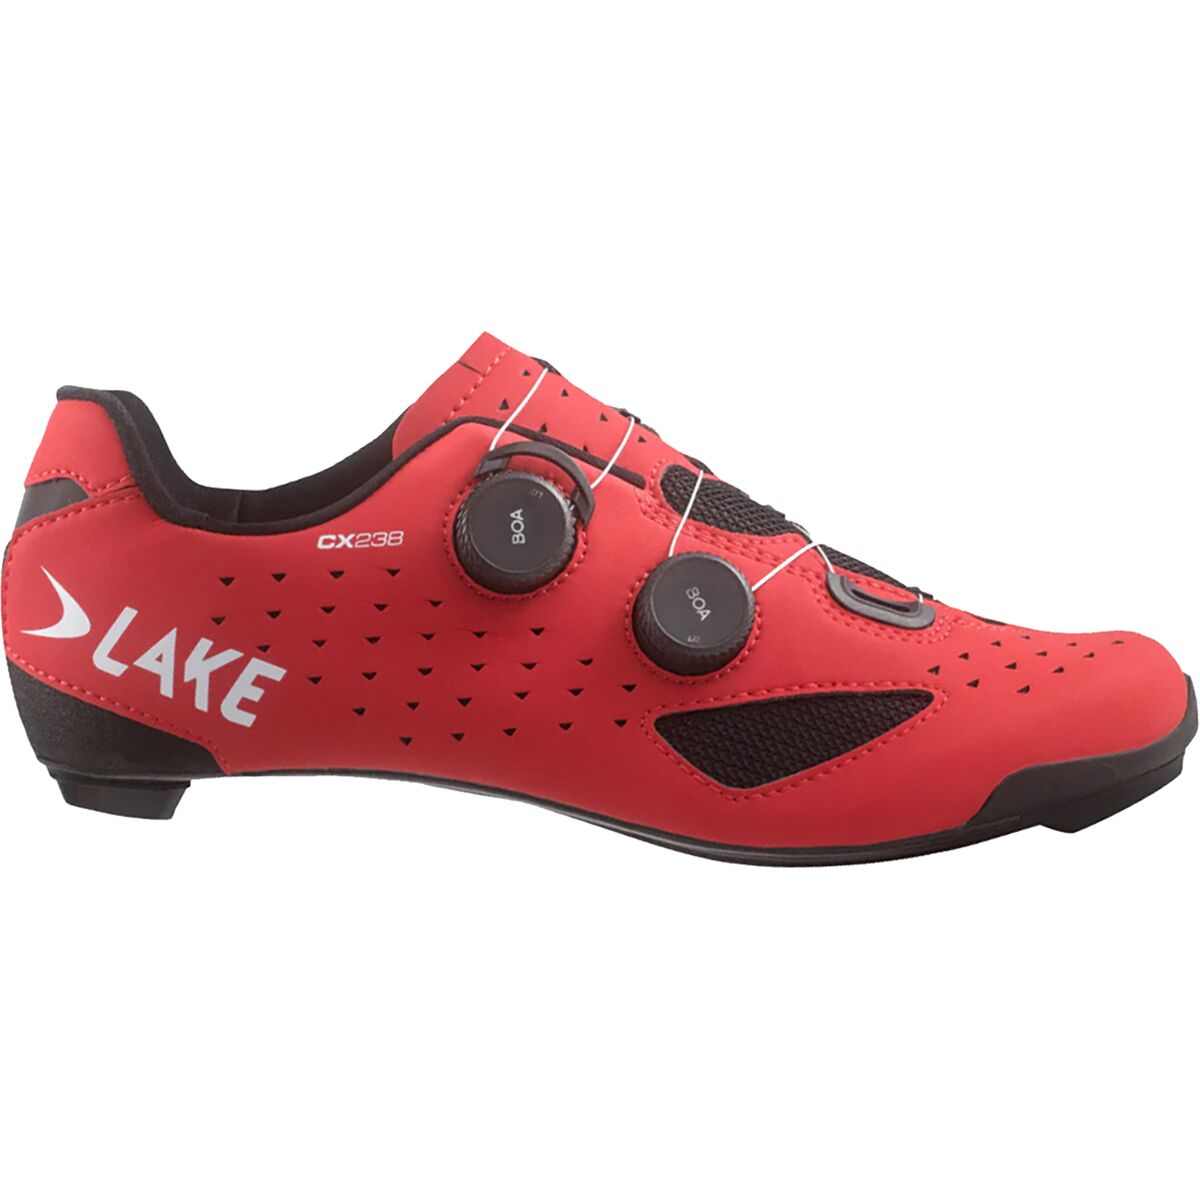 Lake CX238 Cycling Shoe - Men's